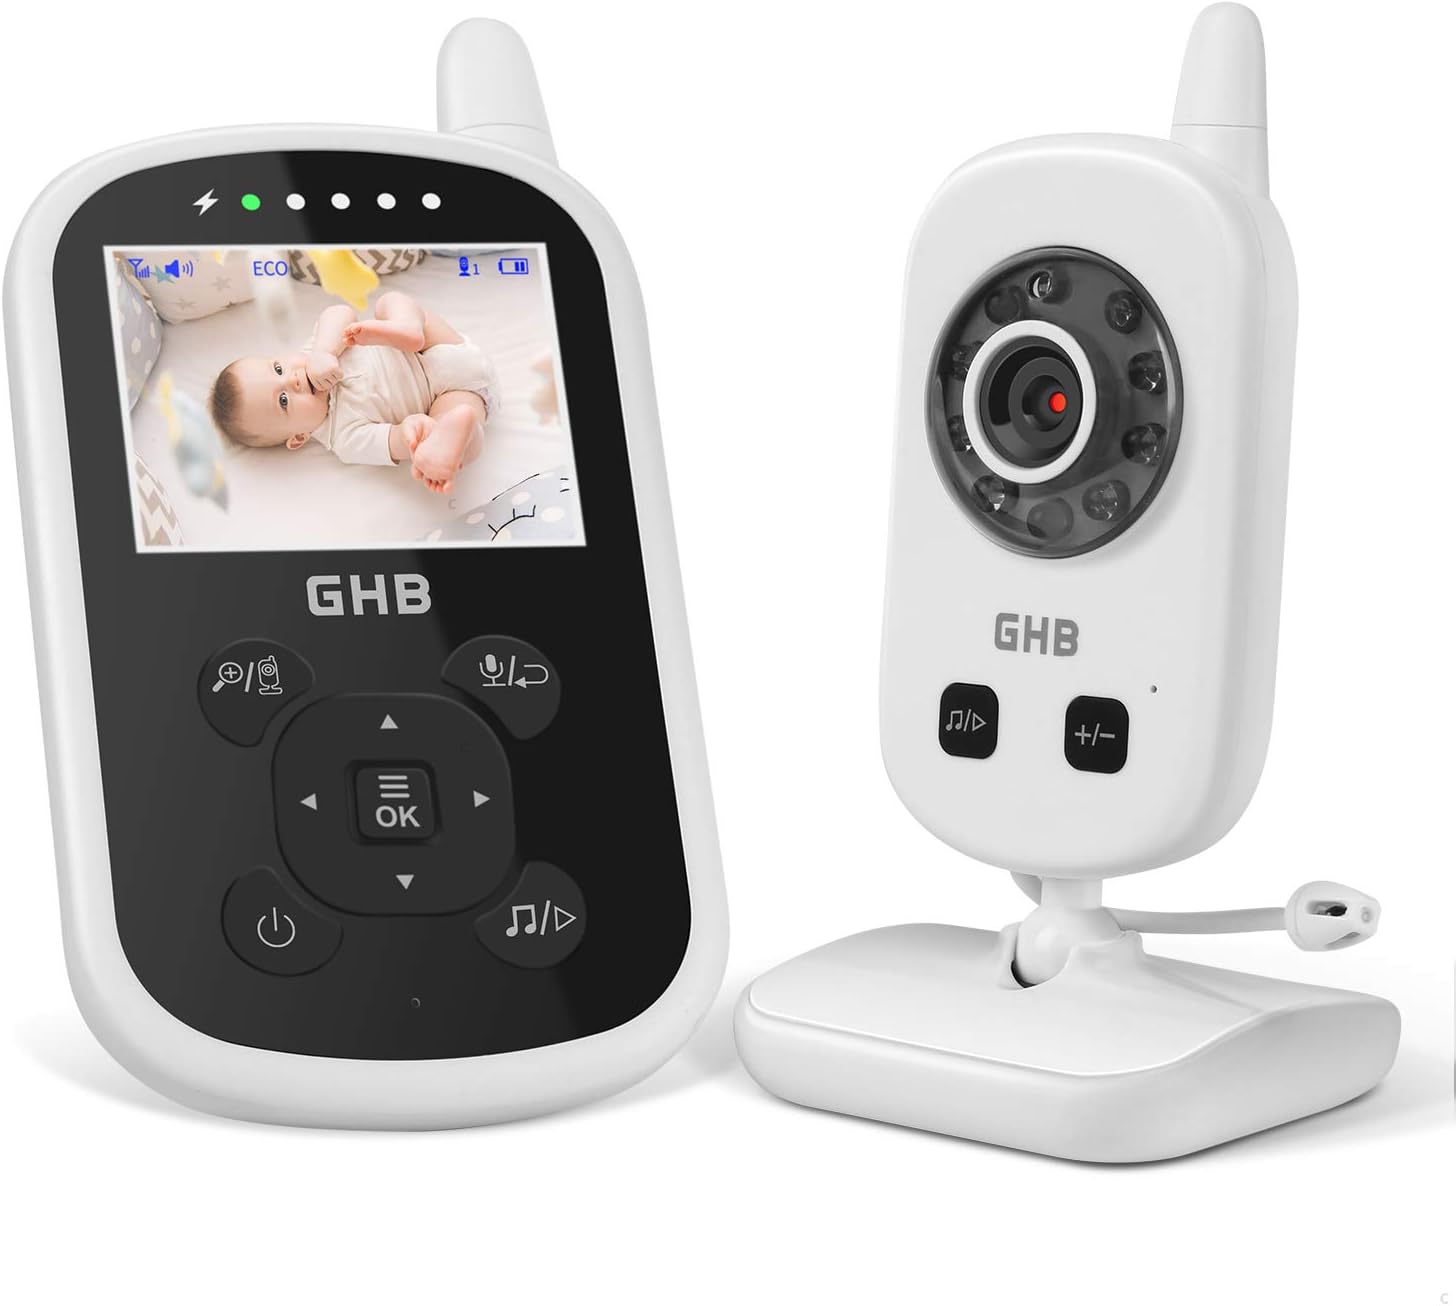 Ghb Babyphone Mit Kamera Video Baby Monitor (, Ghz Gegensprechfunktion Eco Modus Nachtsicht Temperatursensor)